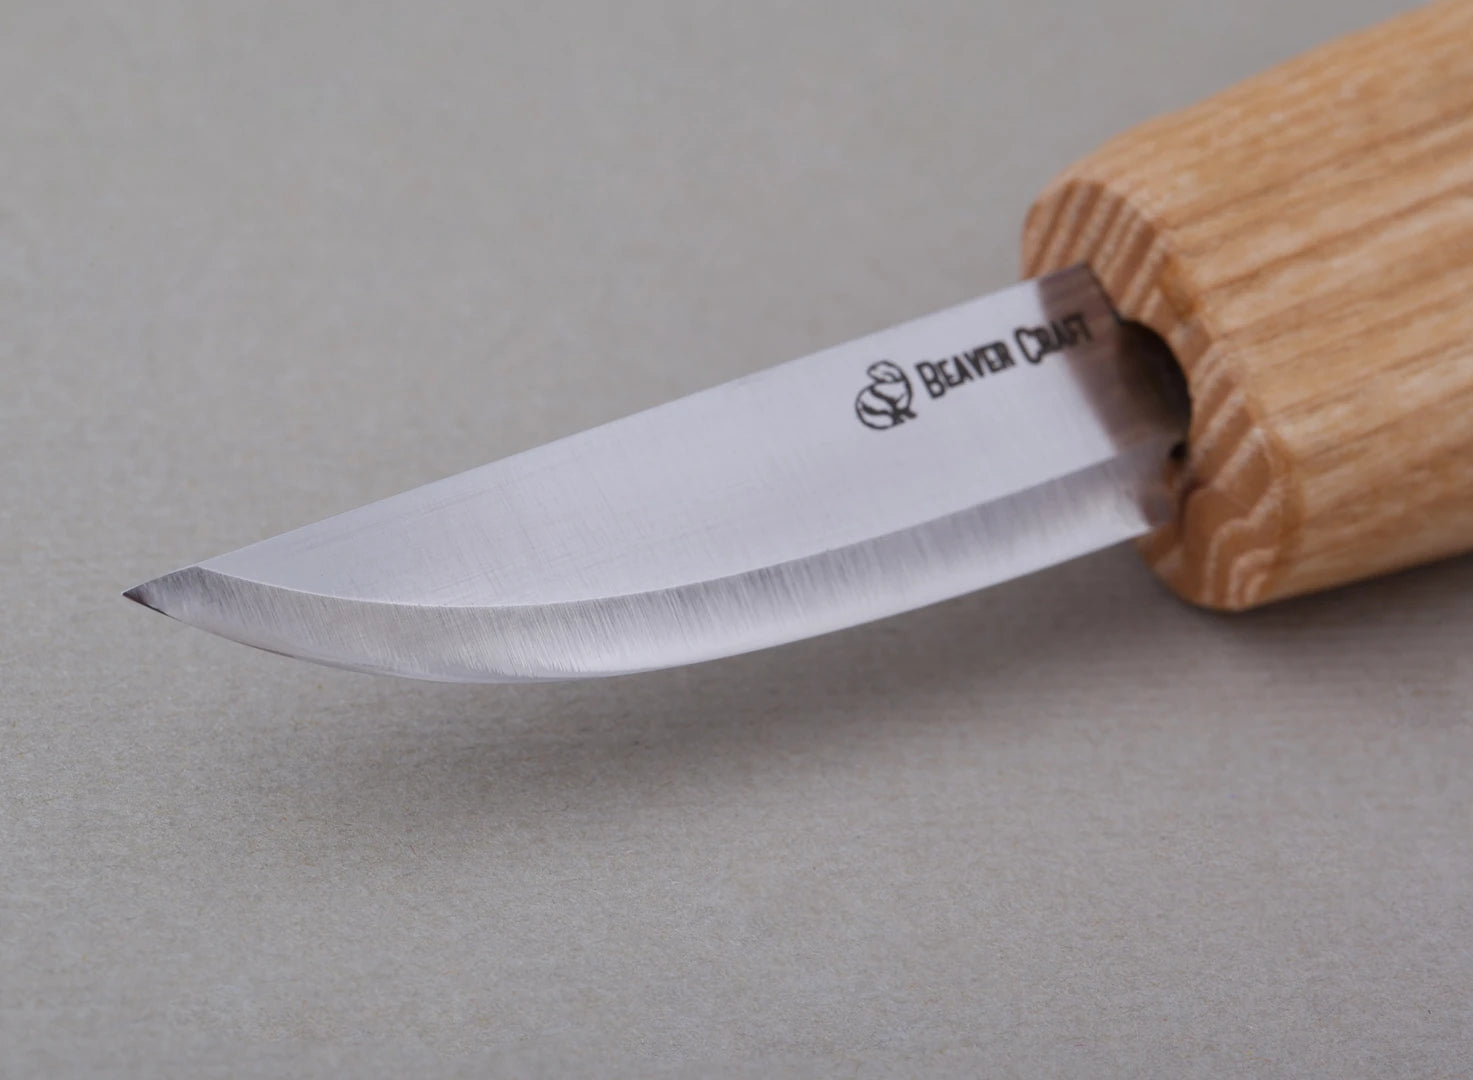 Best small whittling knife for beginners - BeaverCraft